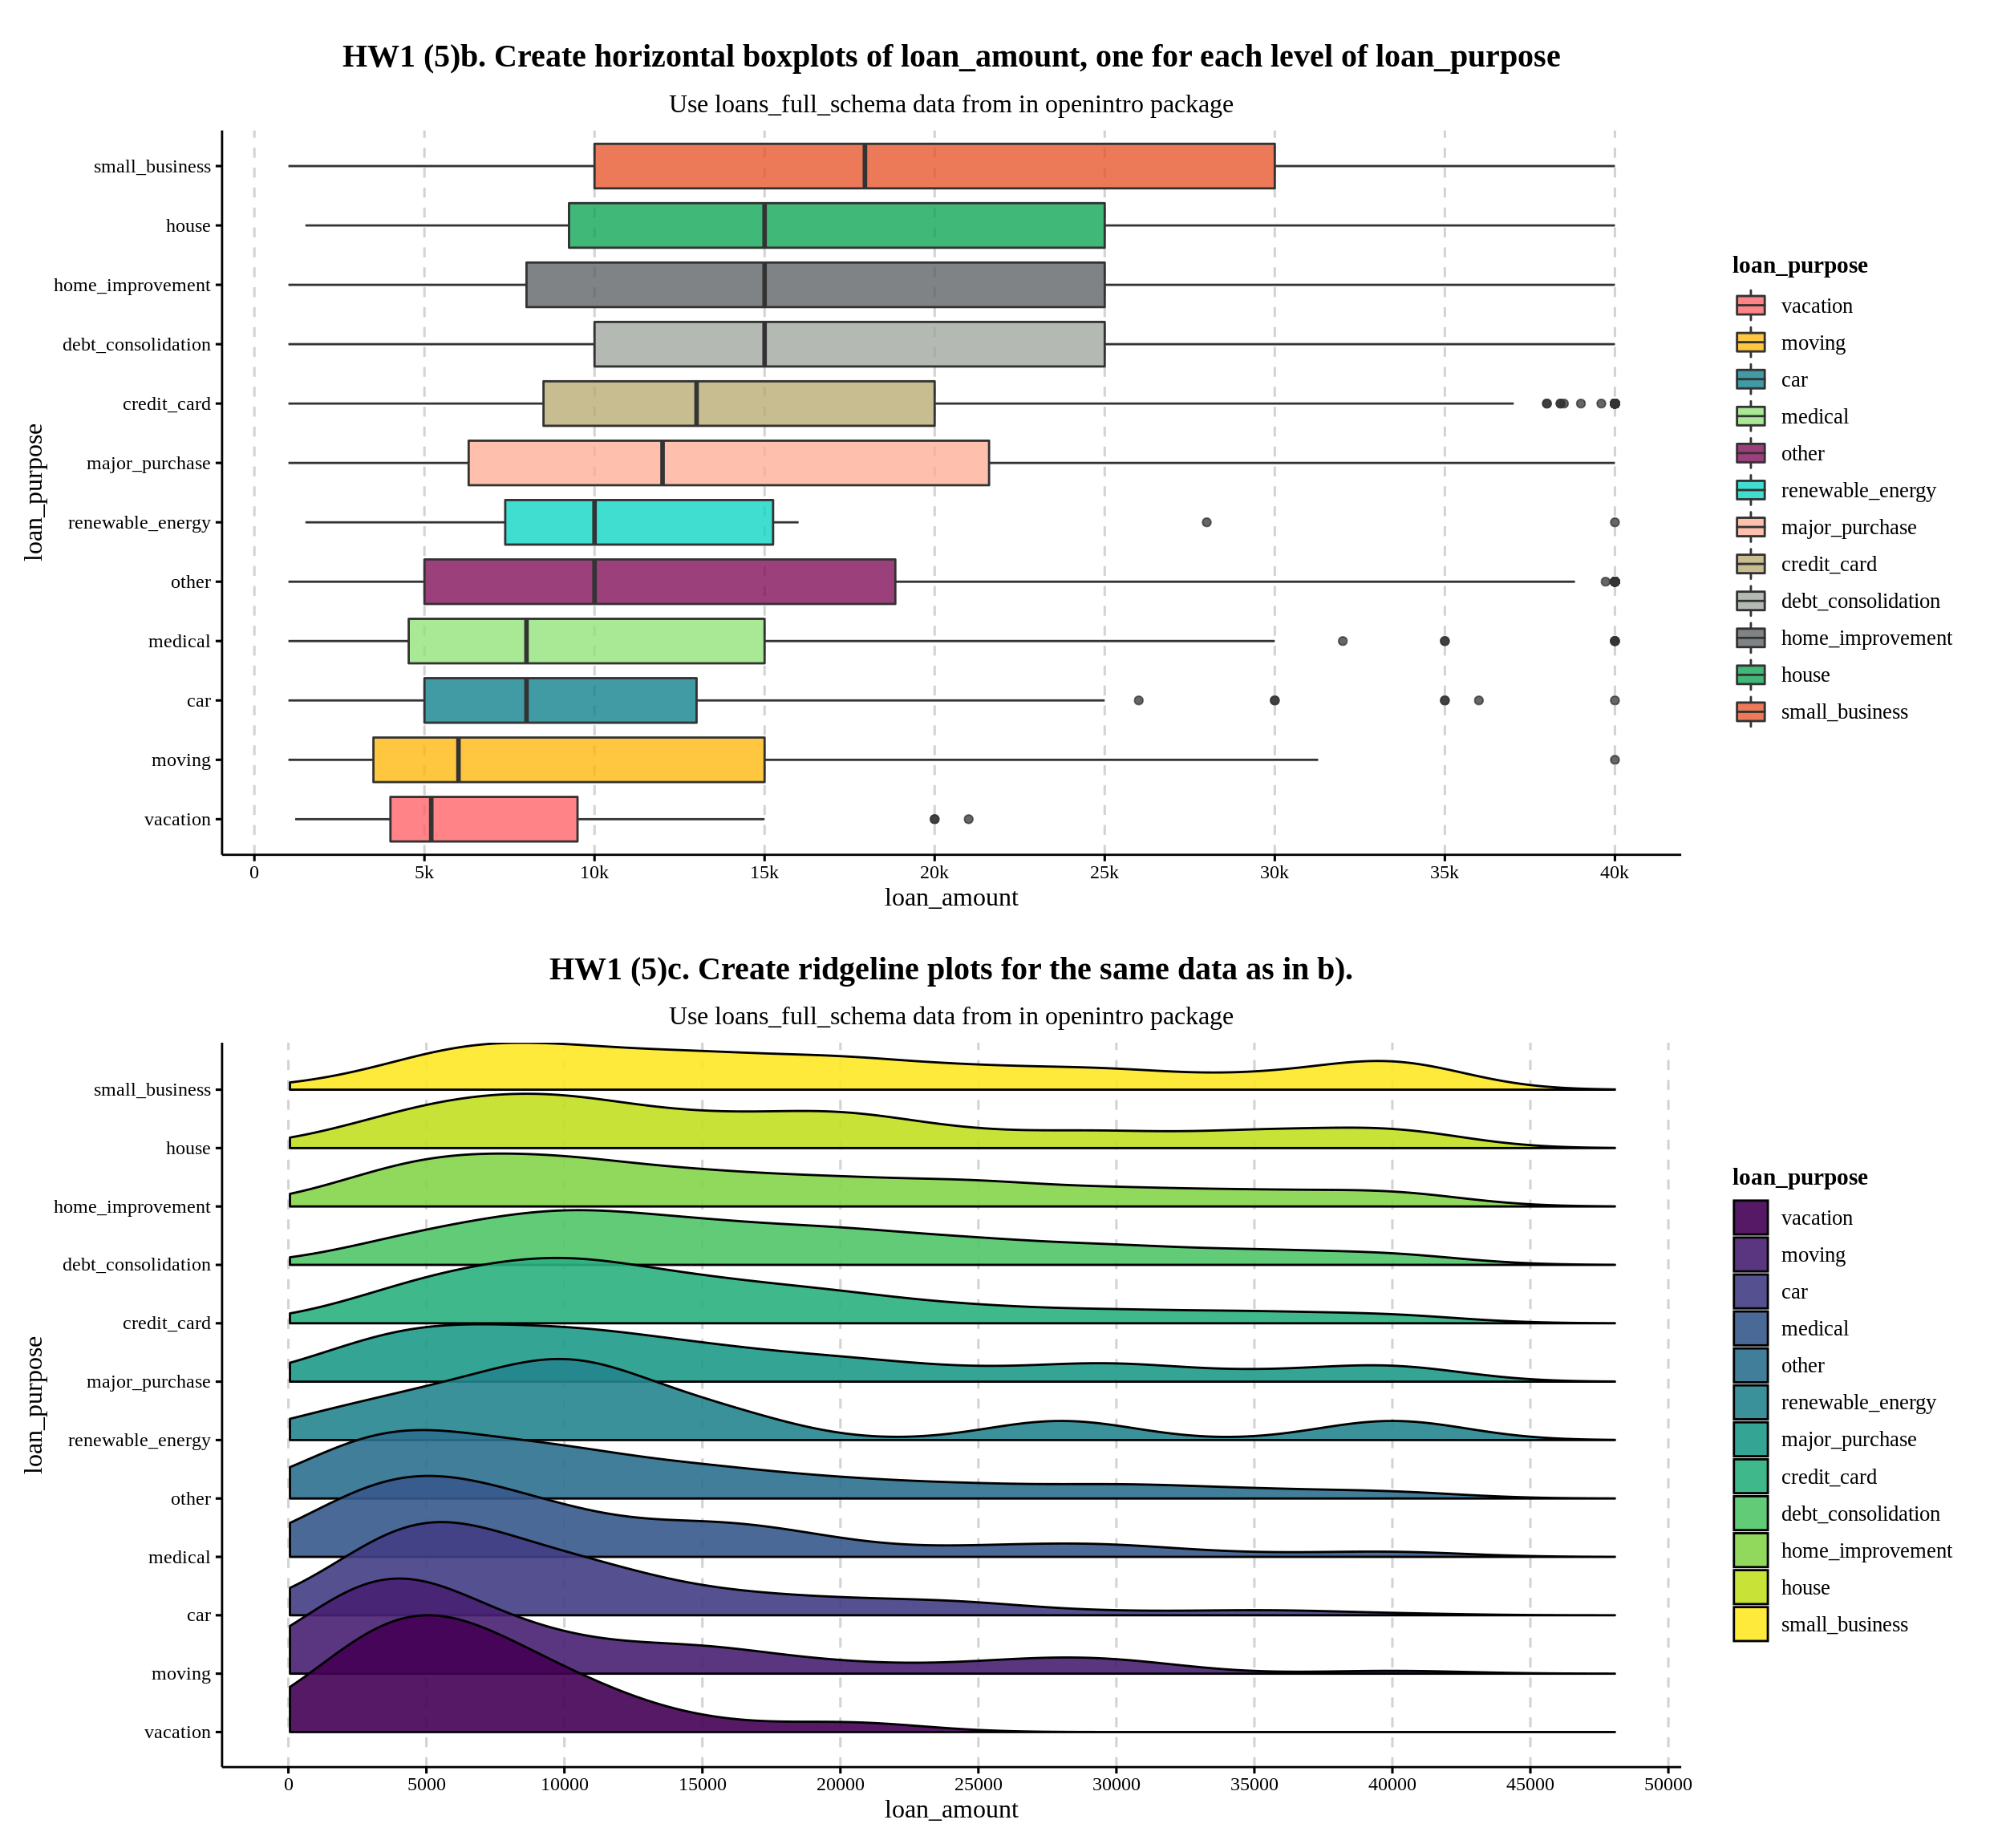 Raincloud plot là một công cụ thú vị trong việc trình bày dữ liệu và phân tích. Hãy xem hình ảnh liên quan để khám phá cách thức sử dụng Raincloud plot trong việc trình bày kết quả nghiên cứu một cách thú vị và dễ hiểu. Bạn sẽ trang bị thêm những kỹ năng quan trọng trong việc phân tích dữ liệu.